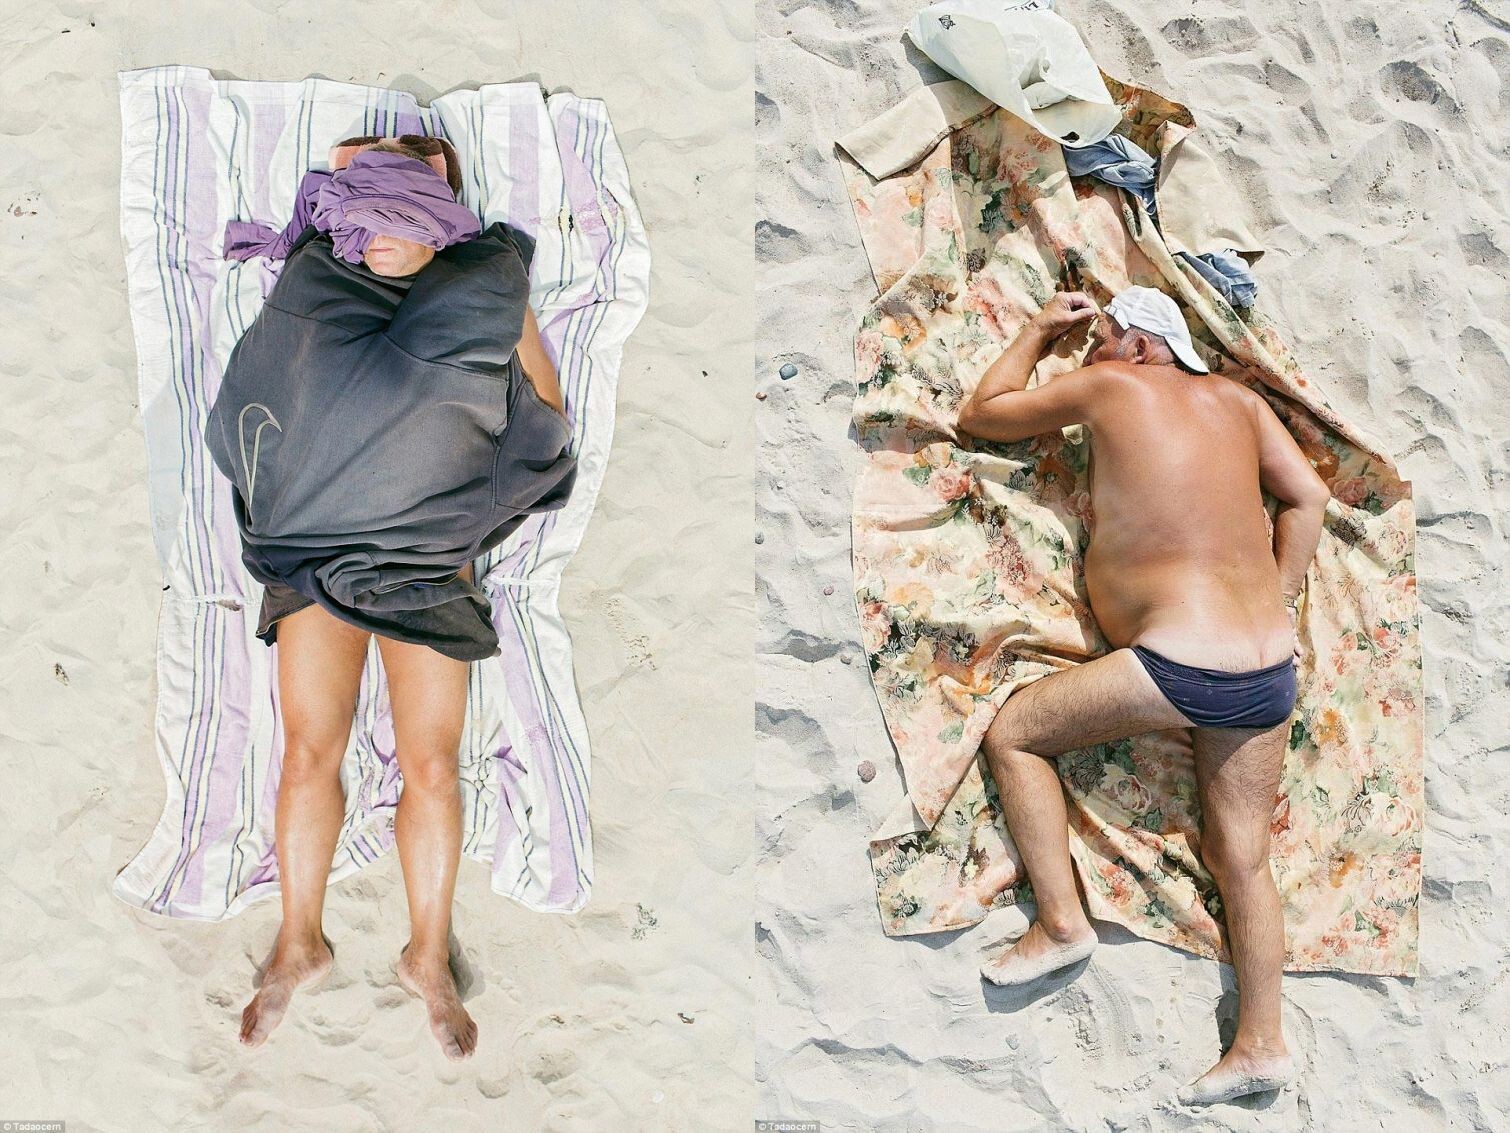  Фотографии, доказывающие, что любой может посещать пляж вне зависимости от типа фигуры 